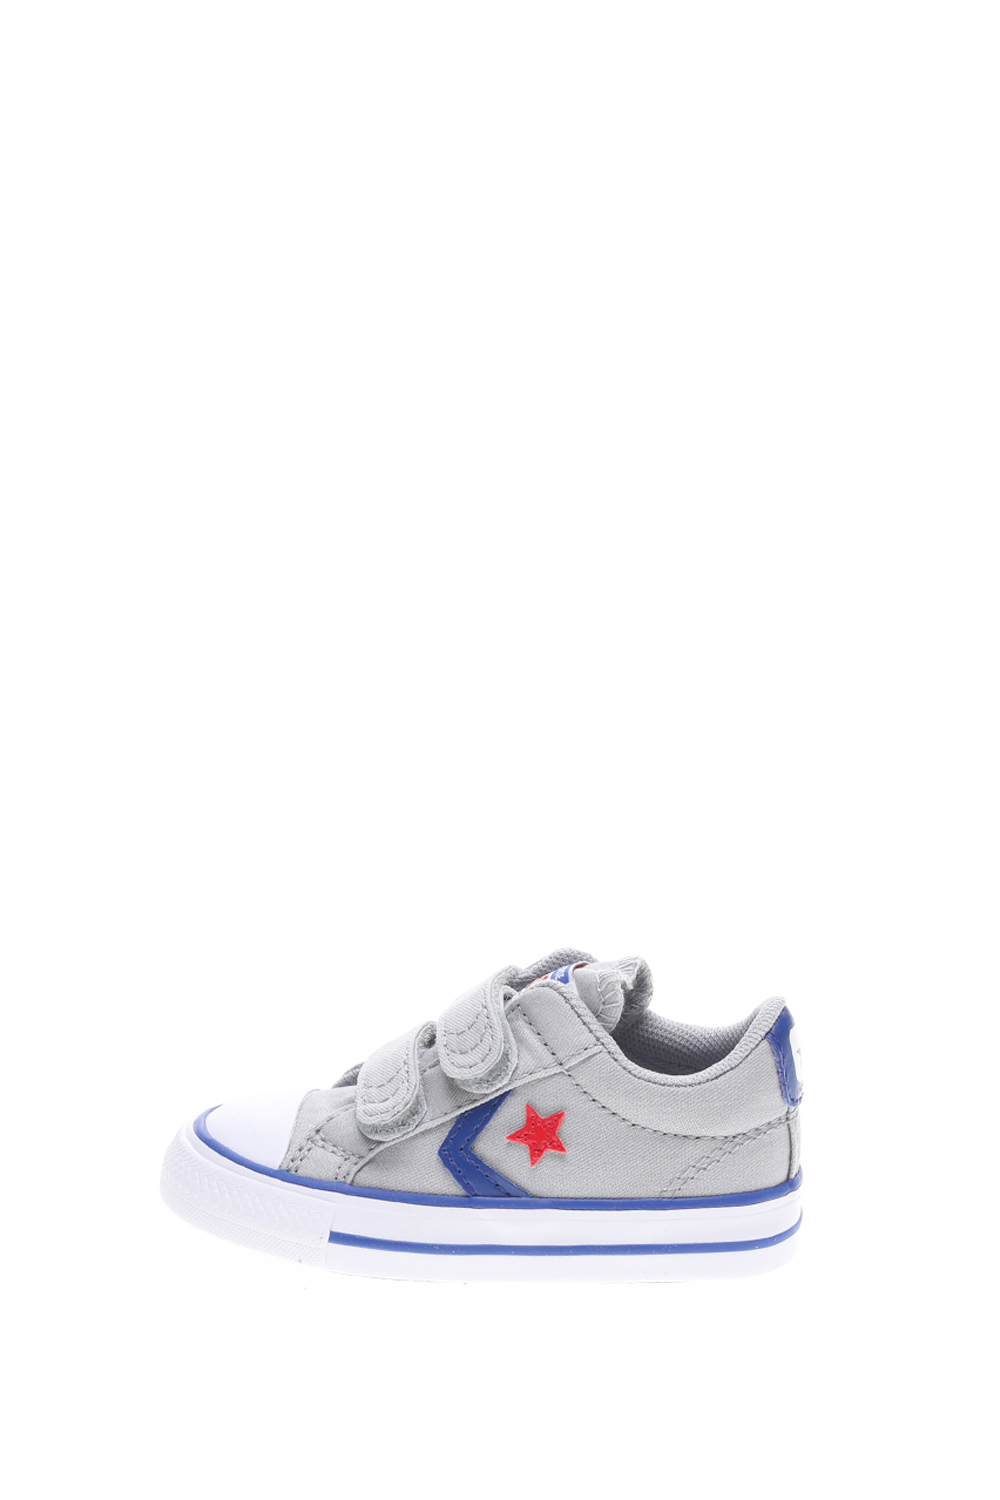 Παιδικά/Baby/Παπούτσια/Sneakers CONVERSE - Βρεφικά sneakers Converse Star Player 2V Ox γκρι